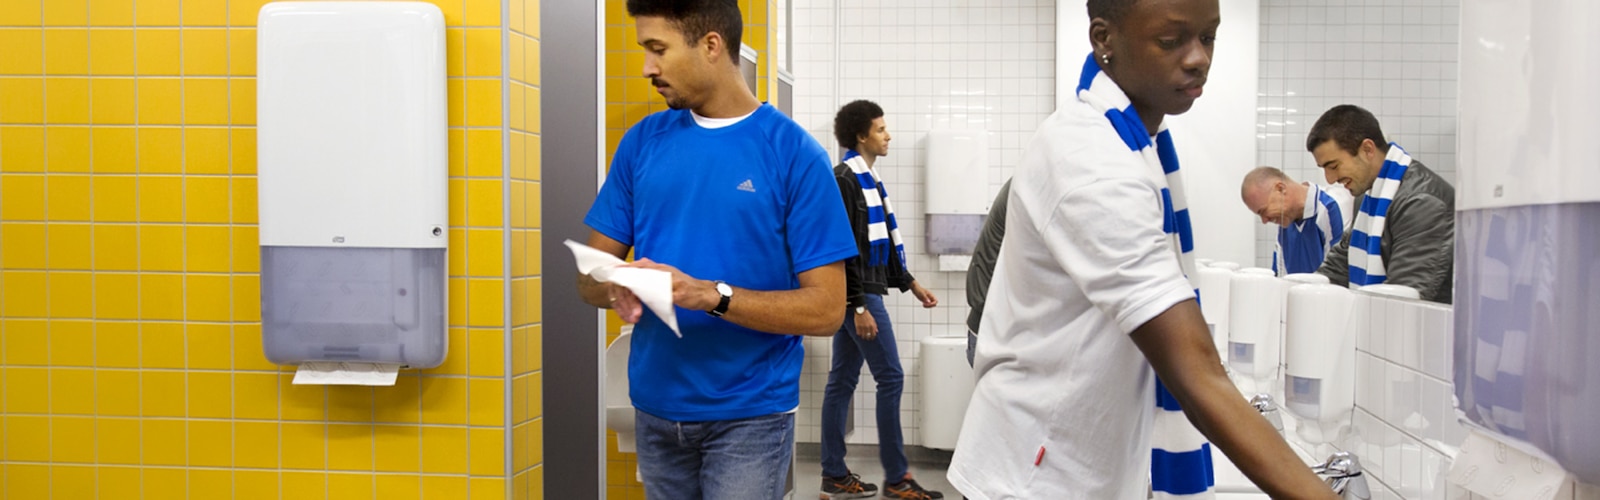 En gruppe menn vasker og tørker hendene i et toalettrom